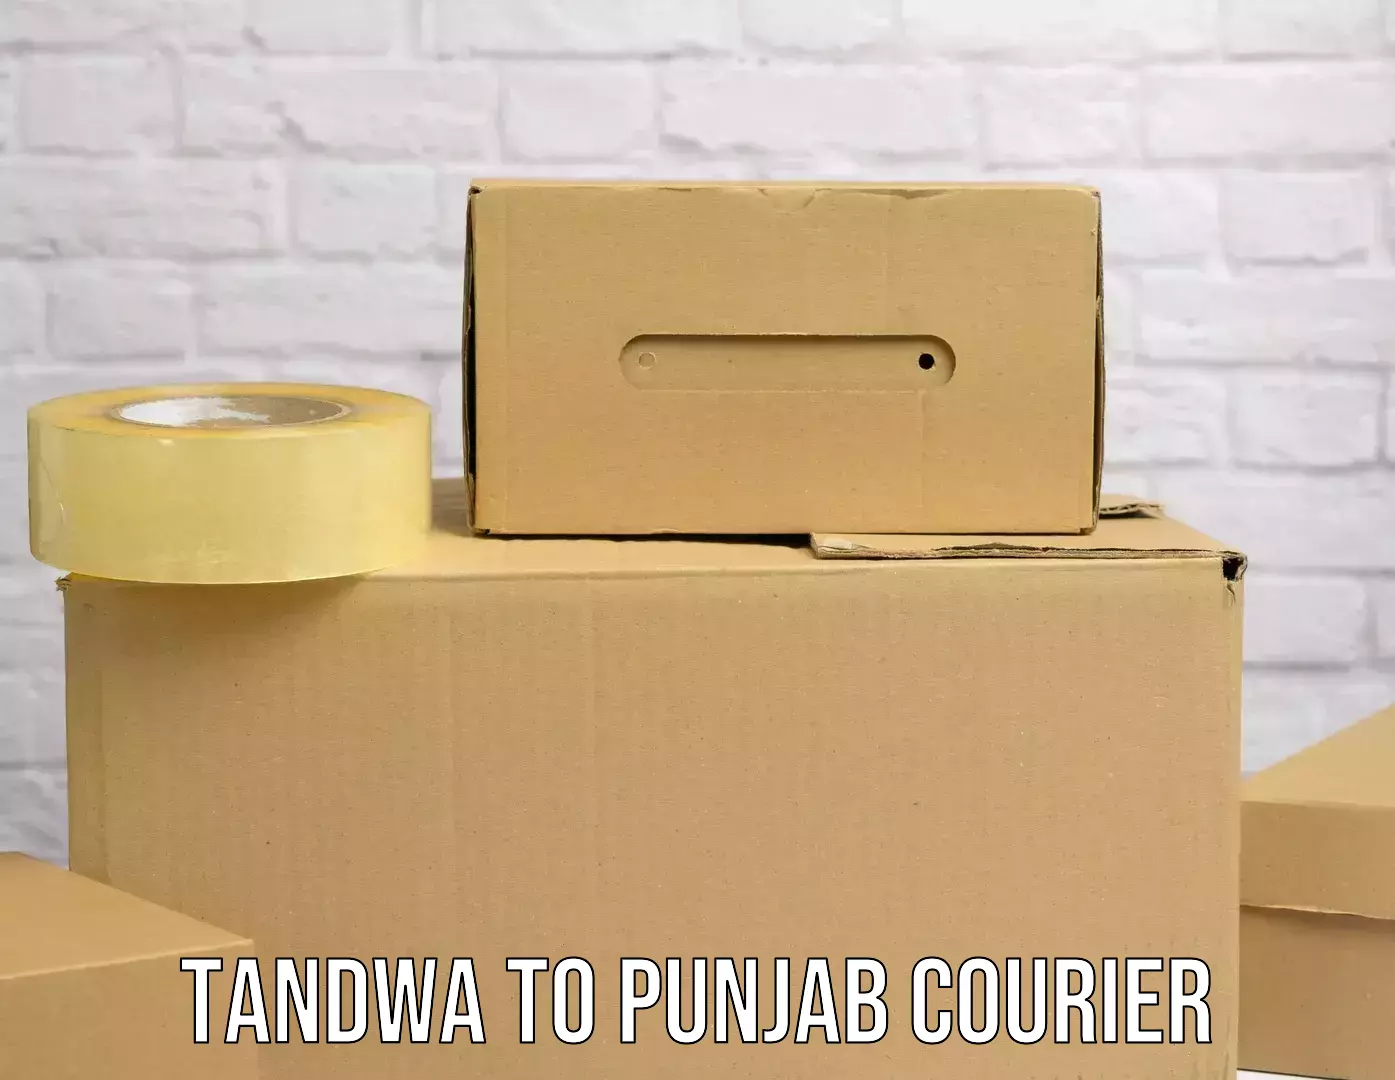 Modern delivery methods Tandwa to Punjab